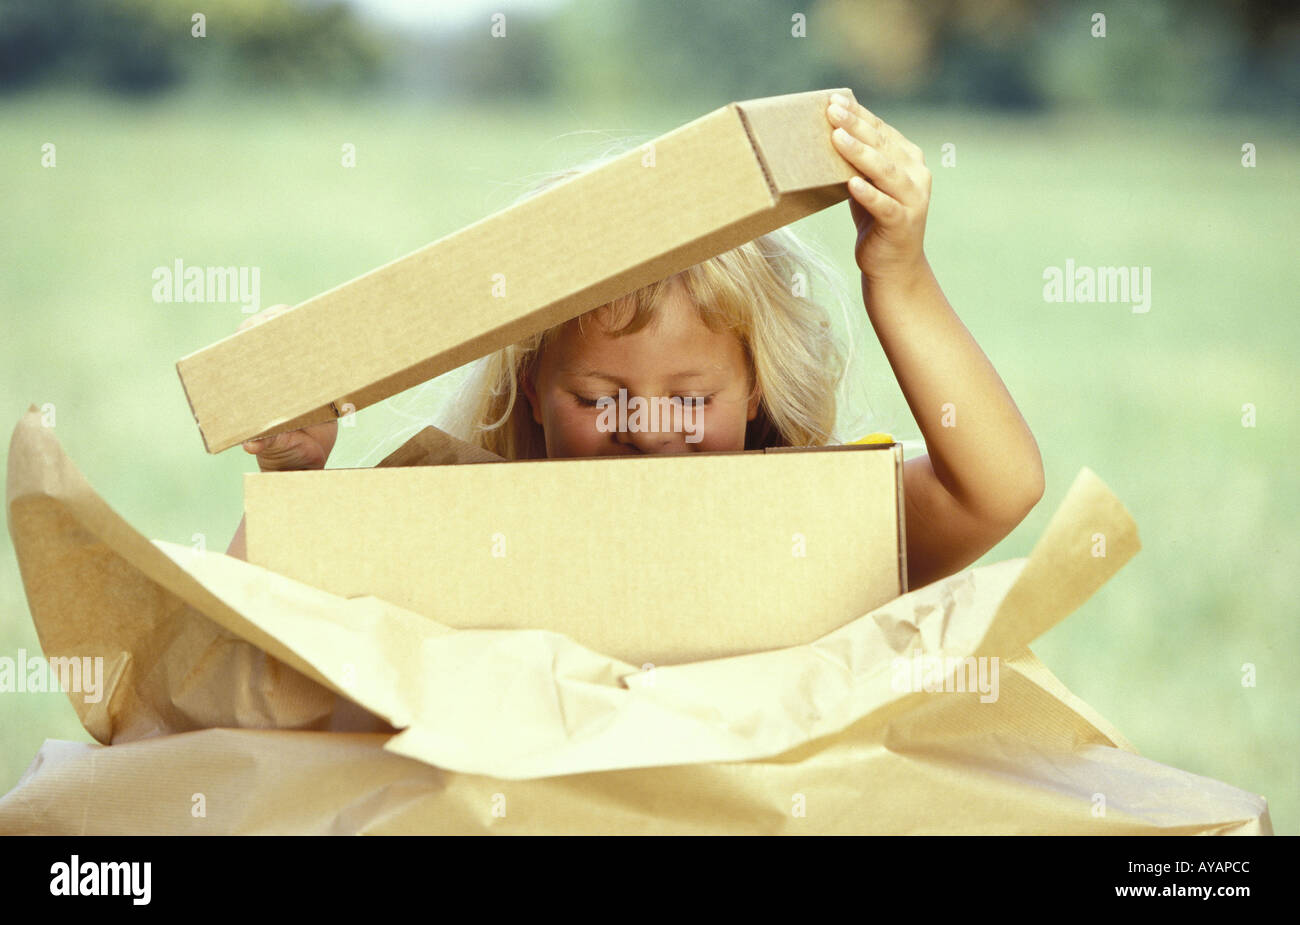 Kleines Maedchen beim Auspacken eines Paketes Stock Photo